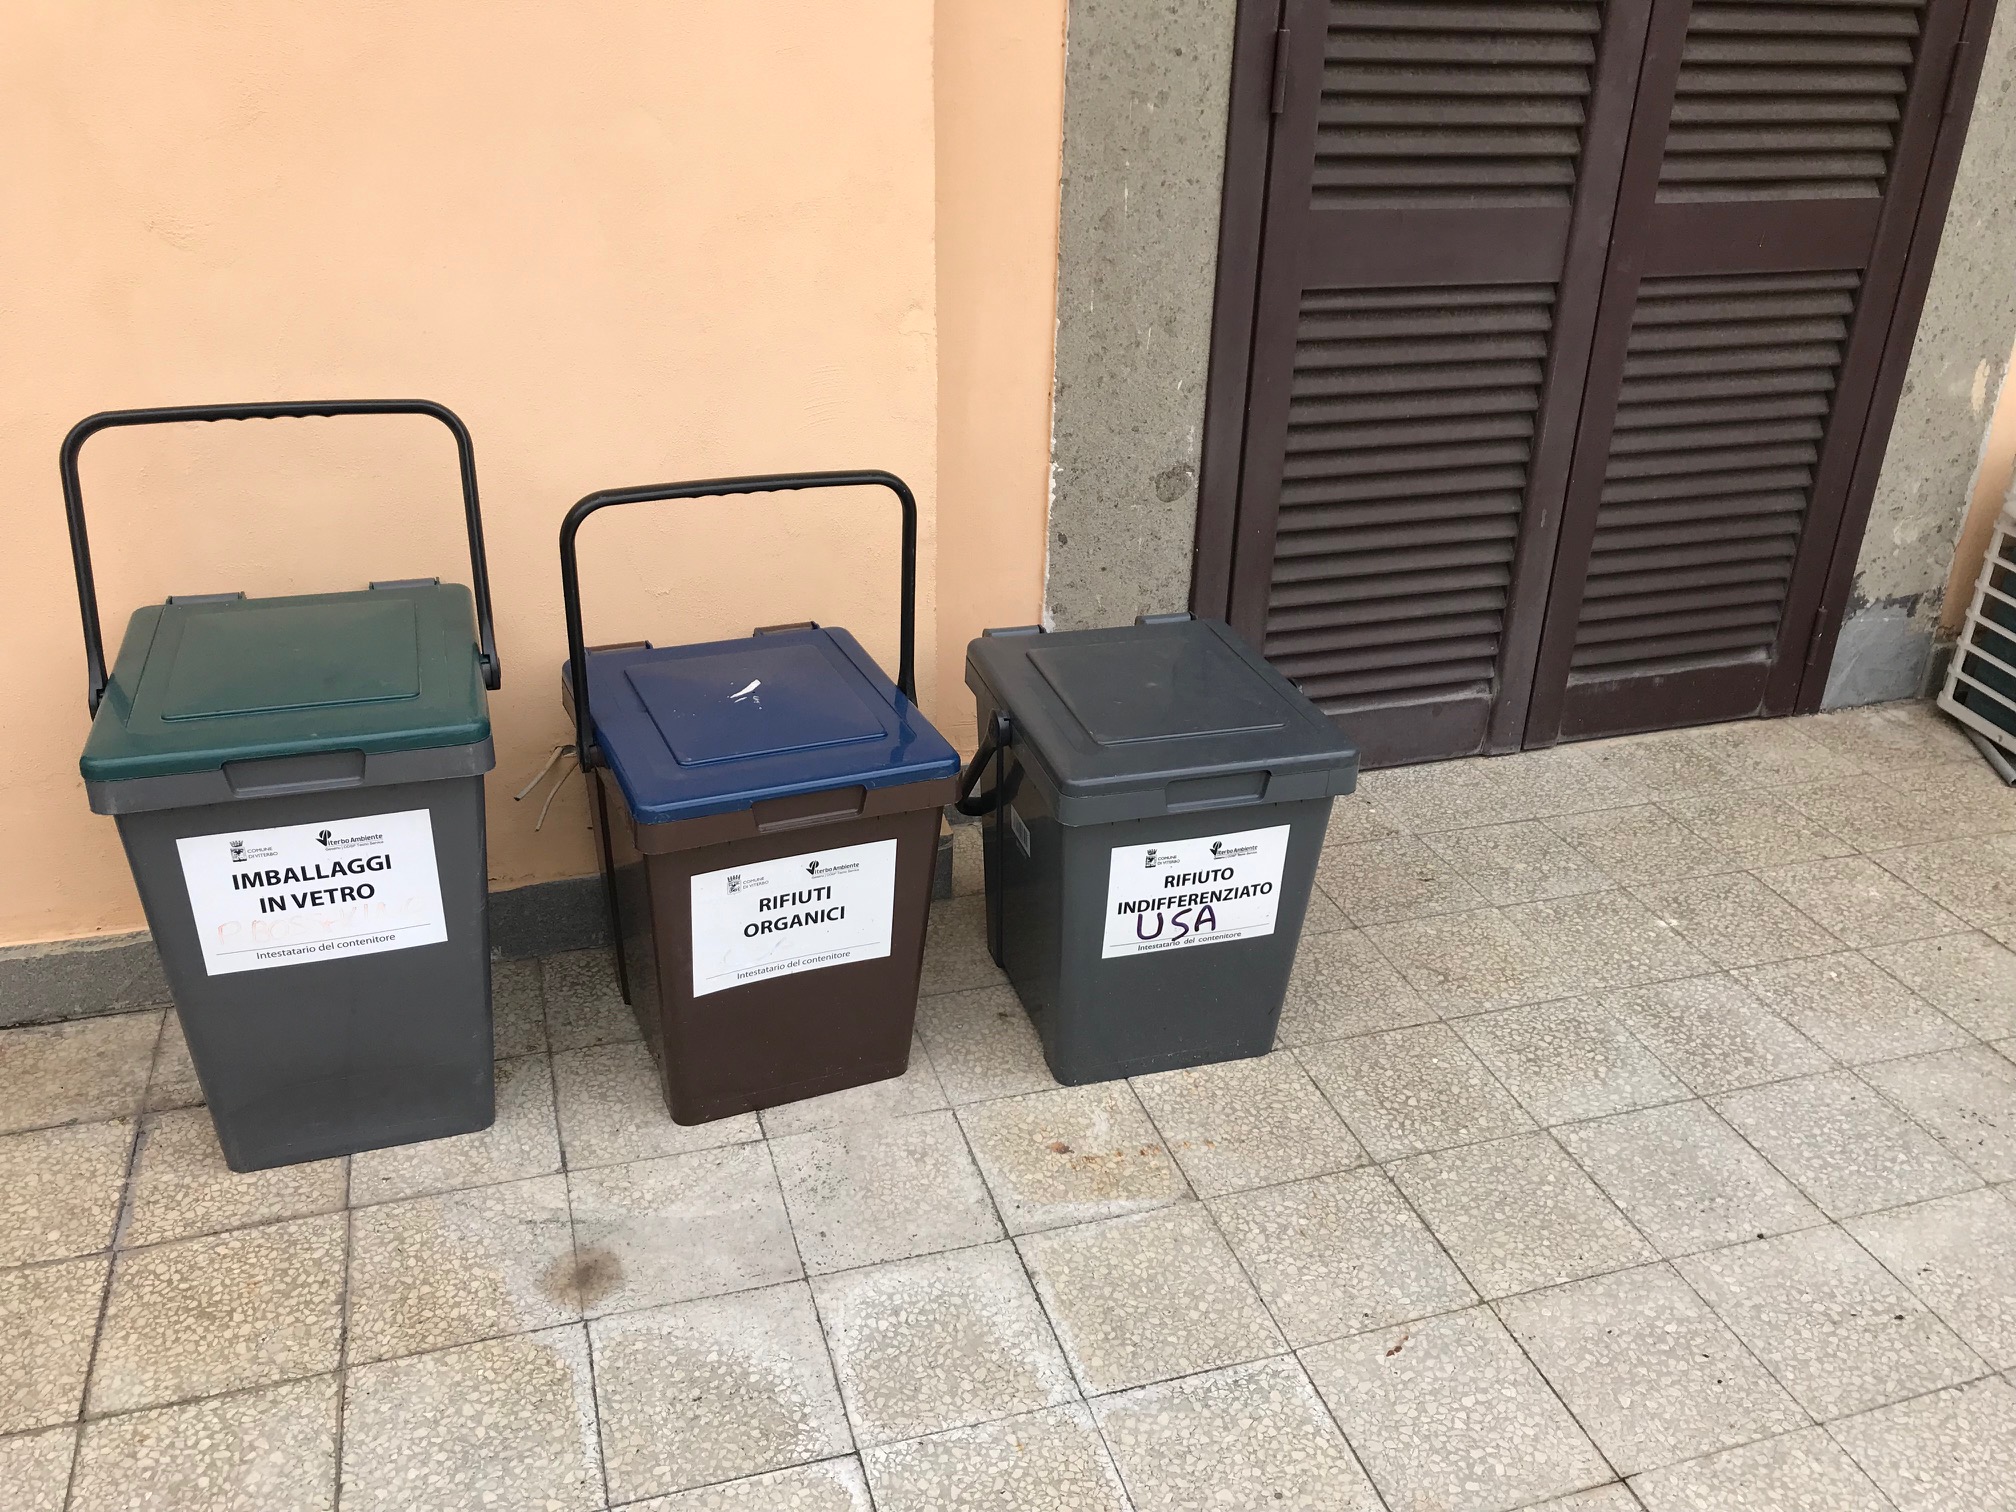 A row of trash bins